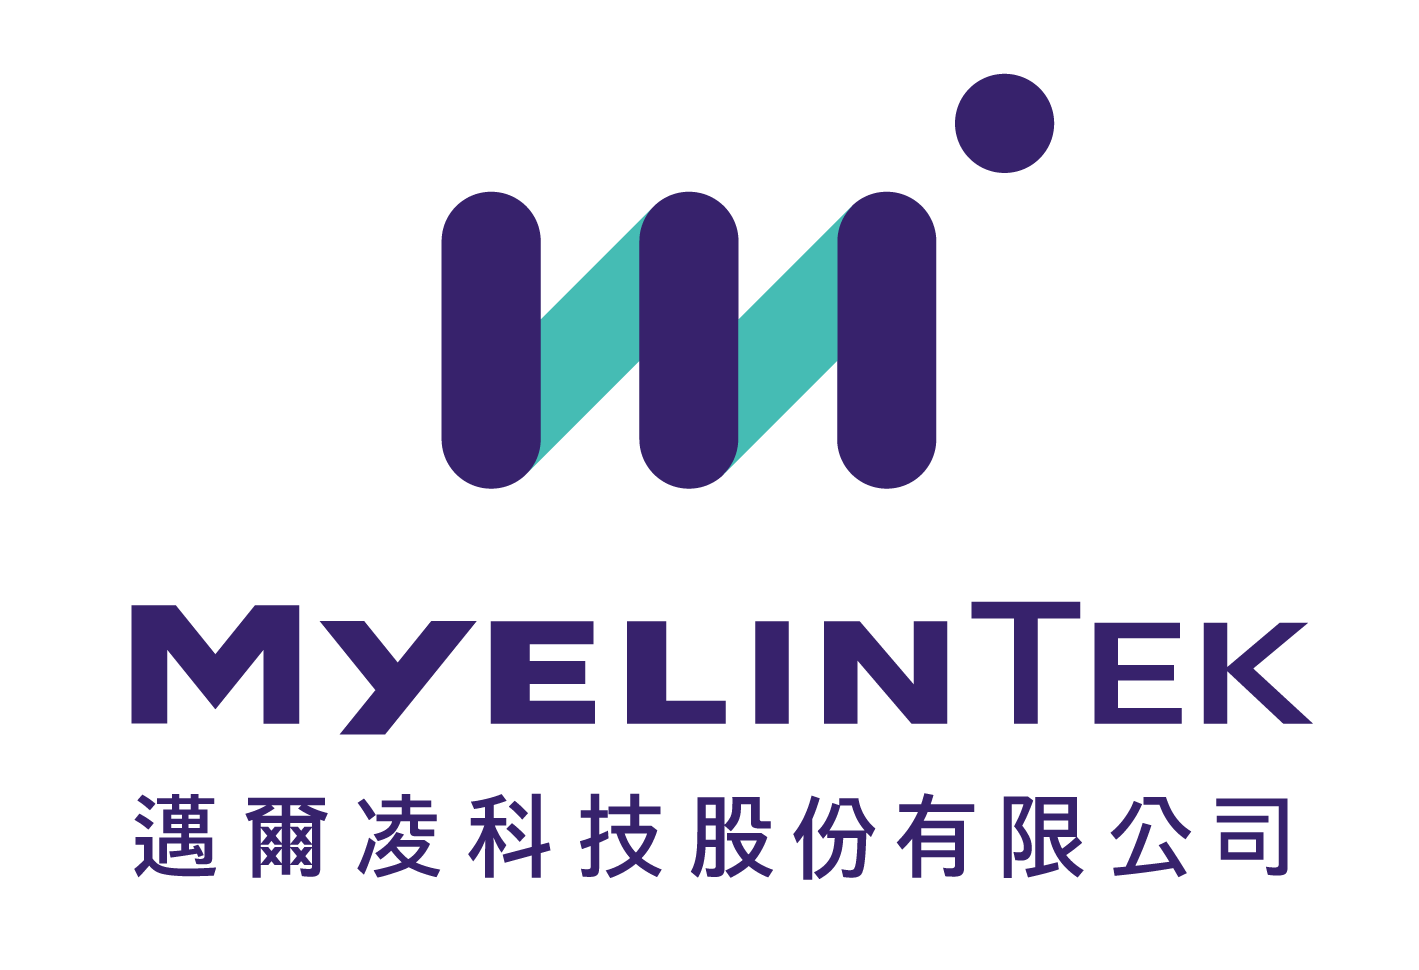 MyelinTek Inc.